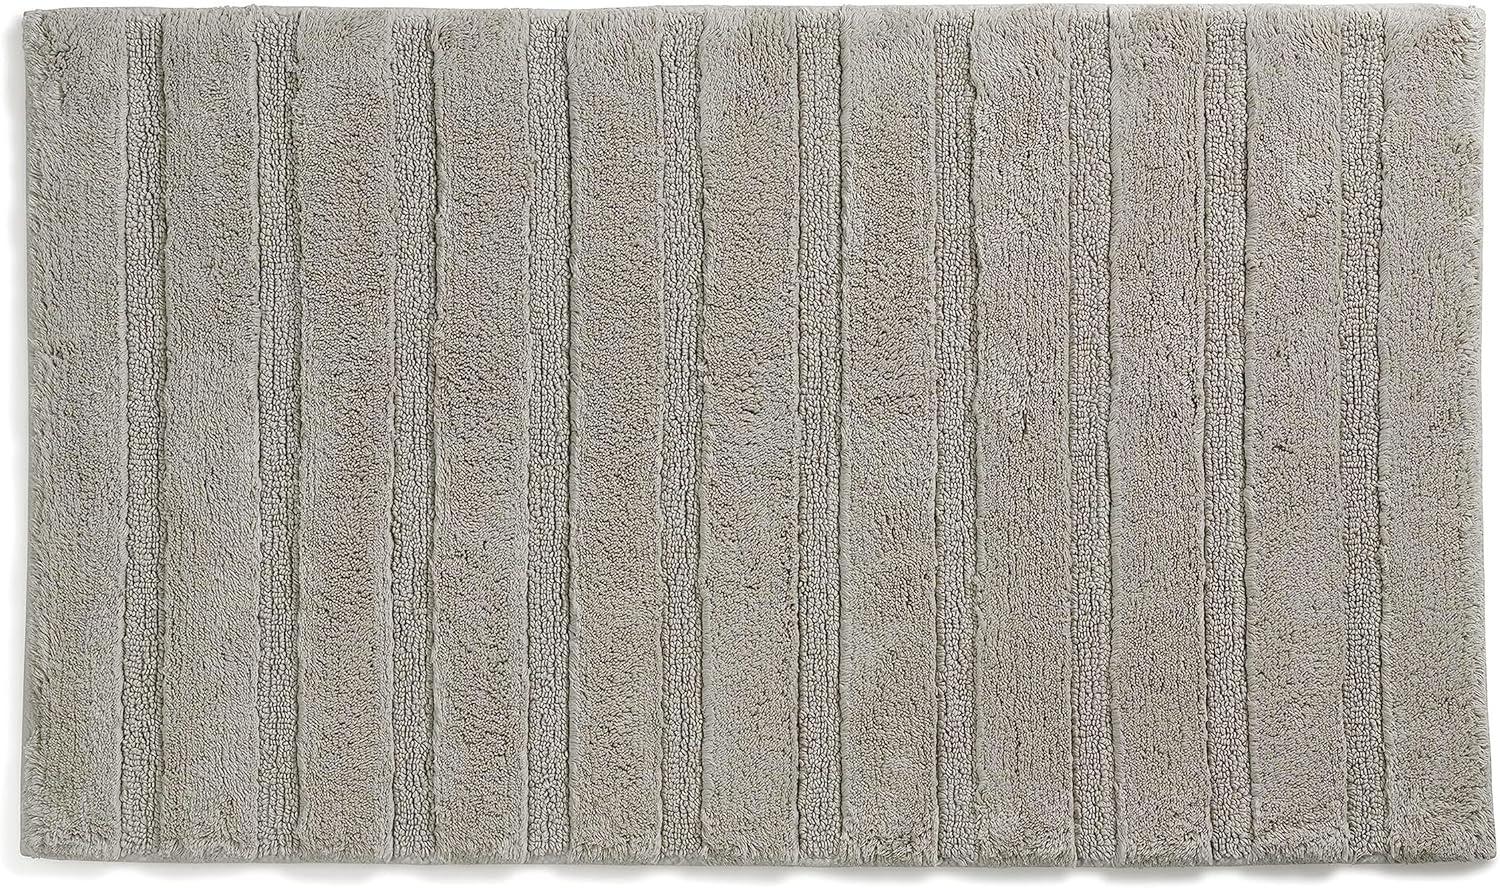 Kela Badematte Megan, 100 cm x 60 cm, 100% Baumwolle, Silbergrau, rutschhemmend, waschbar bis 30° C, geeignet für Fußbodenheizung, 23586 Bild 1